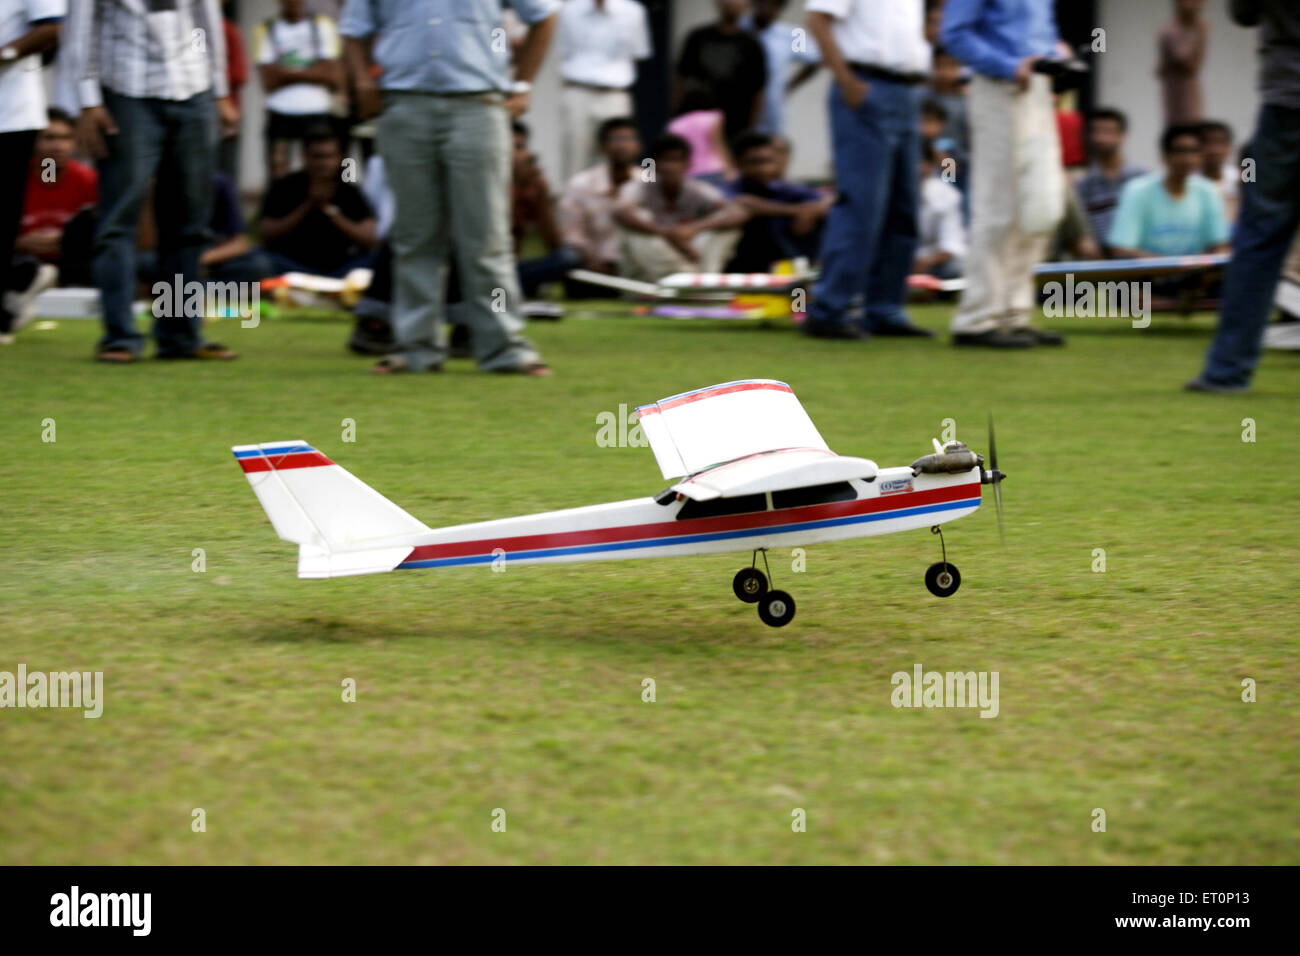 Spectacle Aeromodeling, modèle aérodynamique, Powai, Bombay, Mumbai, Maharashtra, Inde Banque D'Images